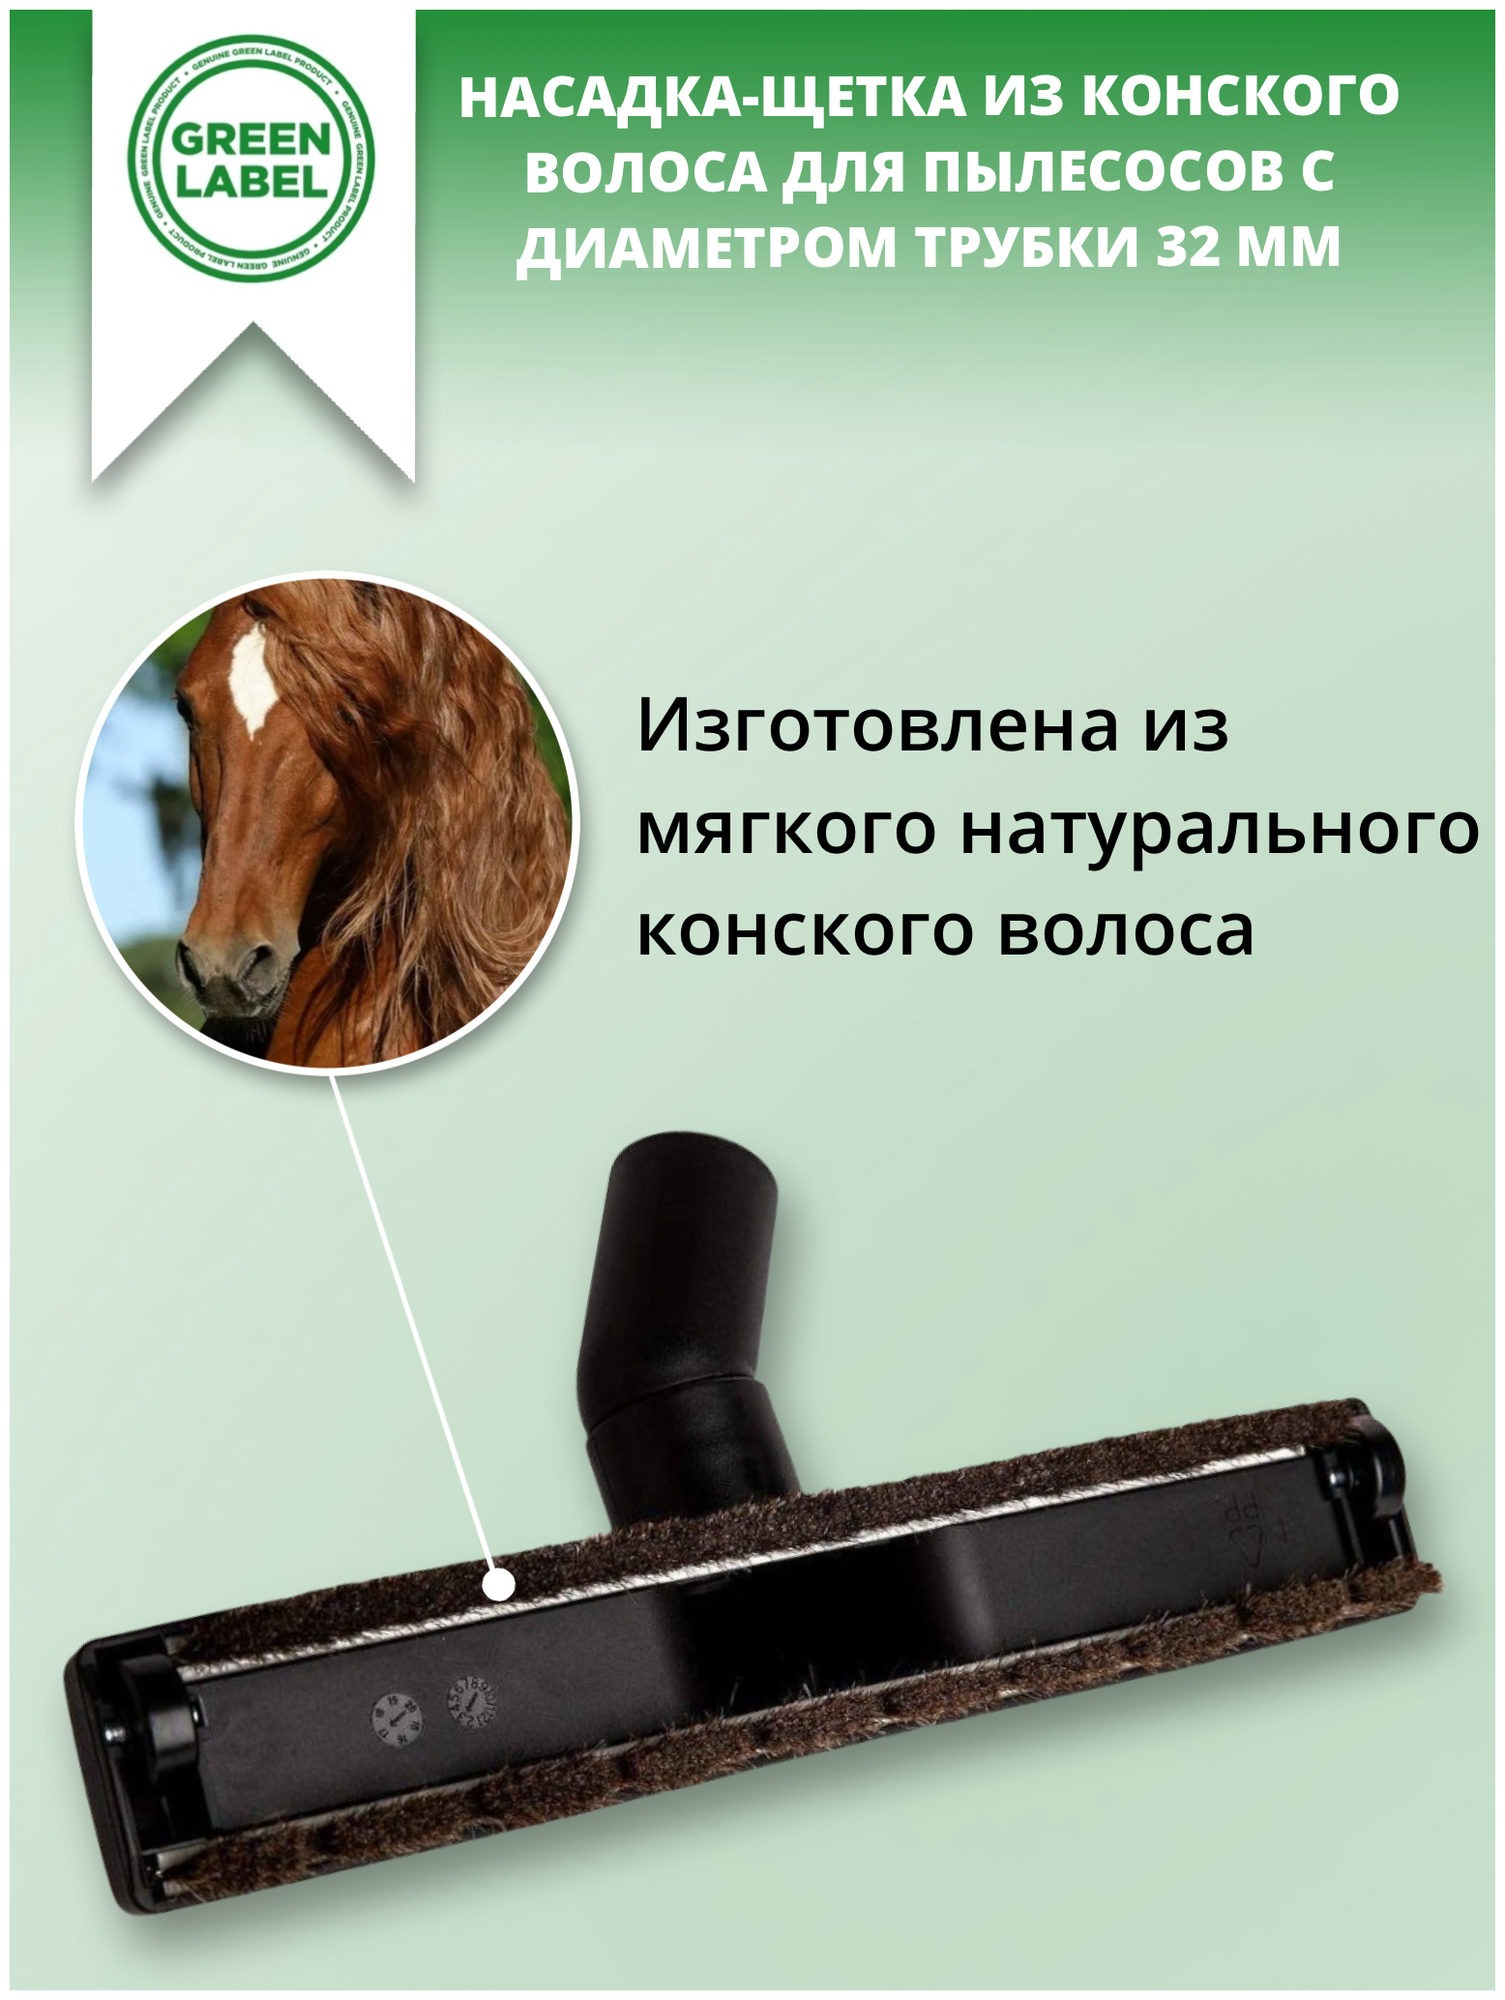 Green Label / Универсальная насадка- щетка для пылесосов с щетиной из конского волоса диаметром 32 мм, для сухой уборки твердых напольных покрытий - фотография № 6